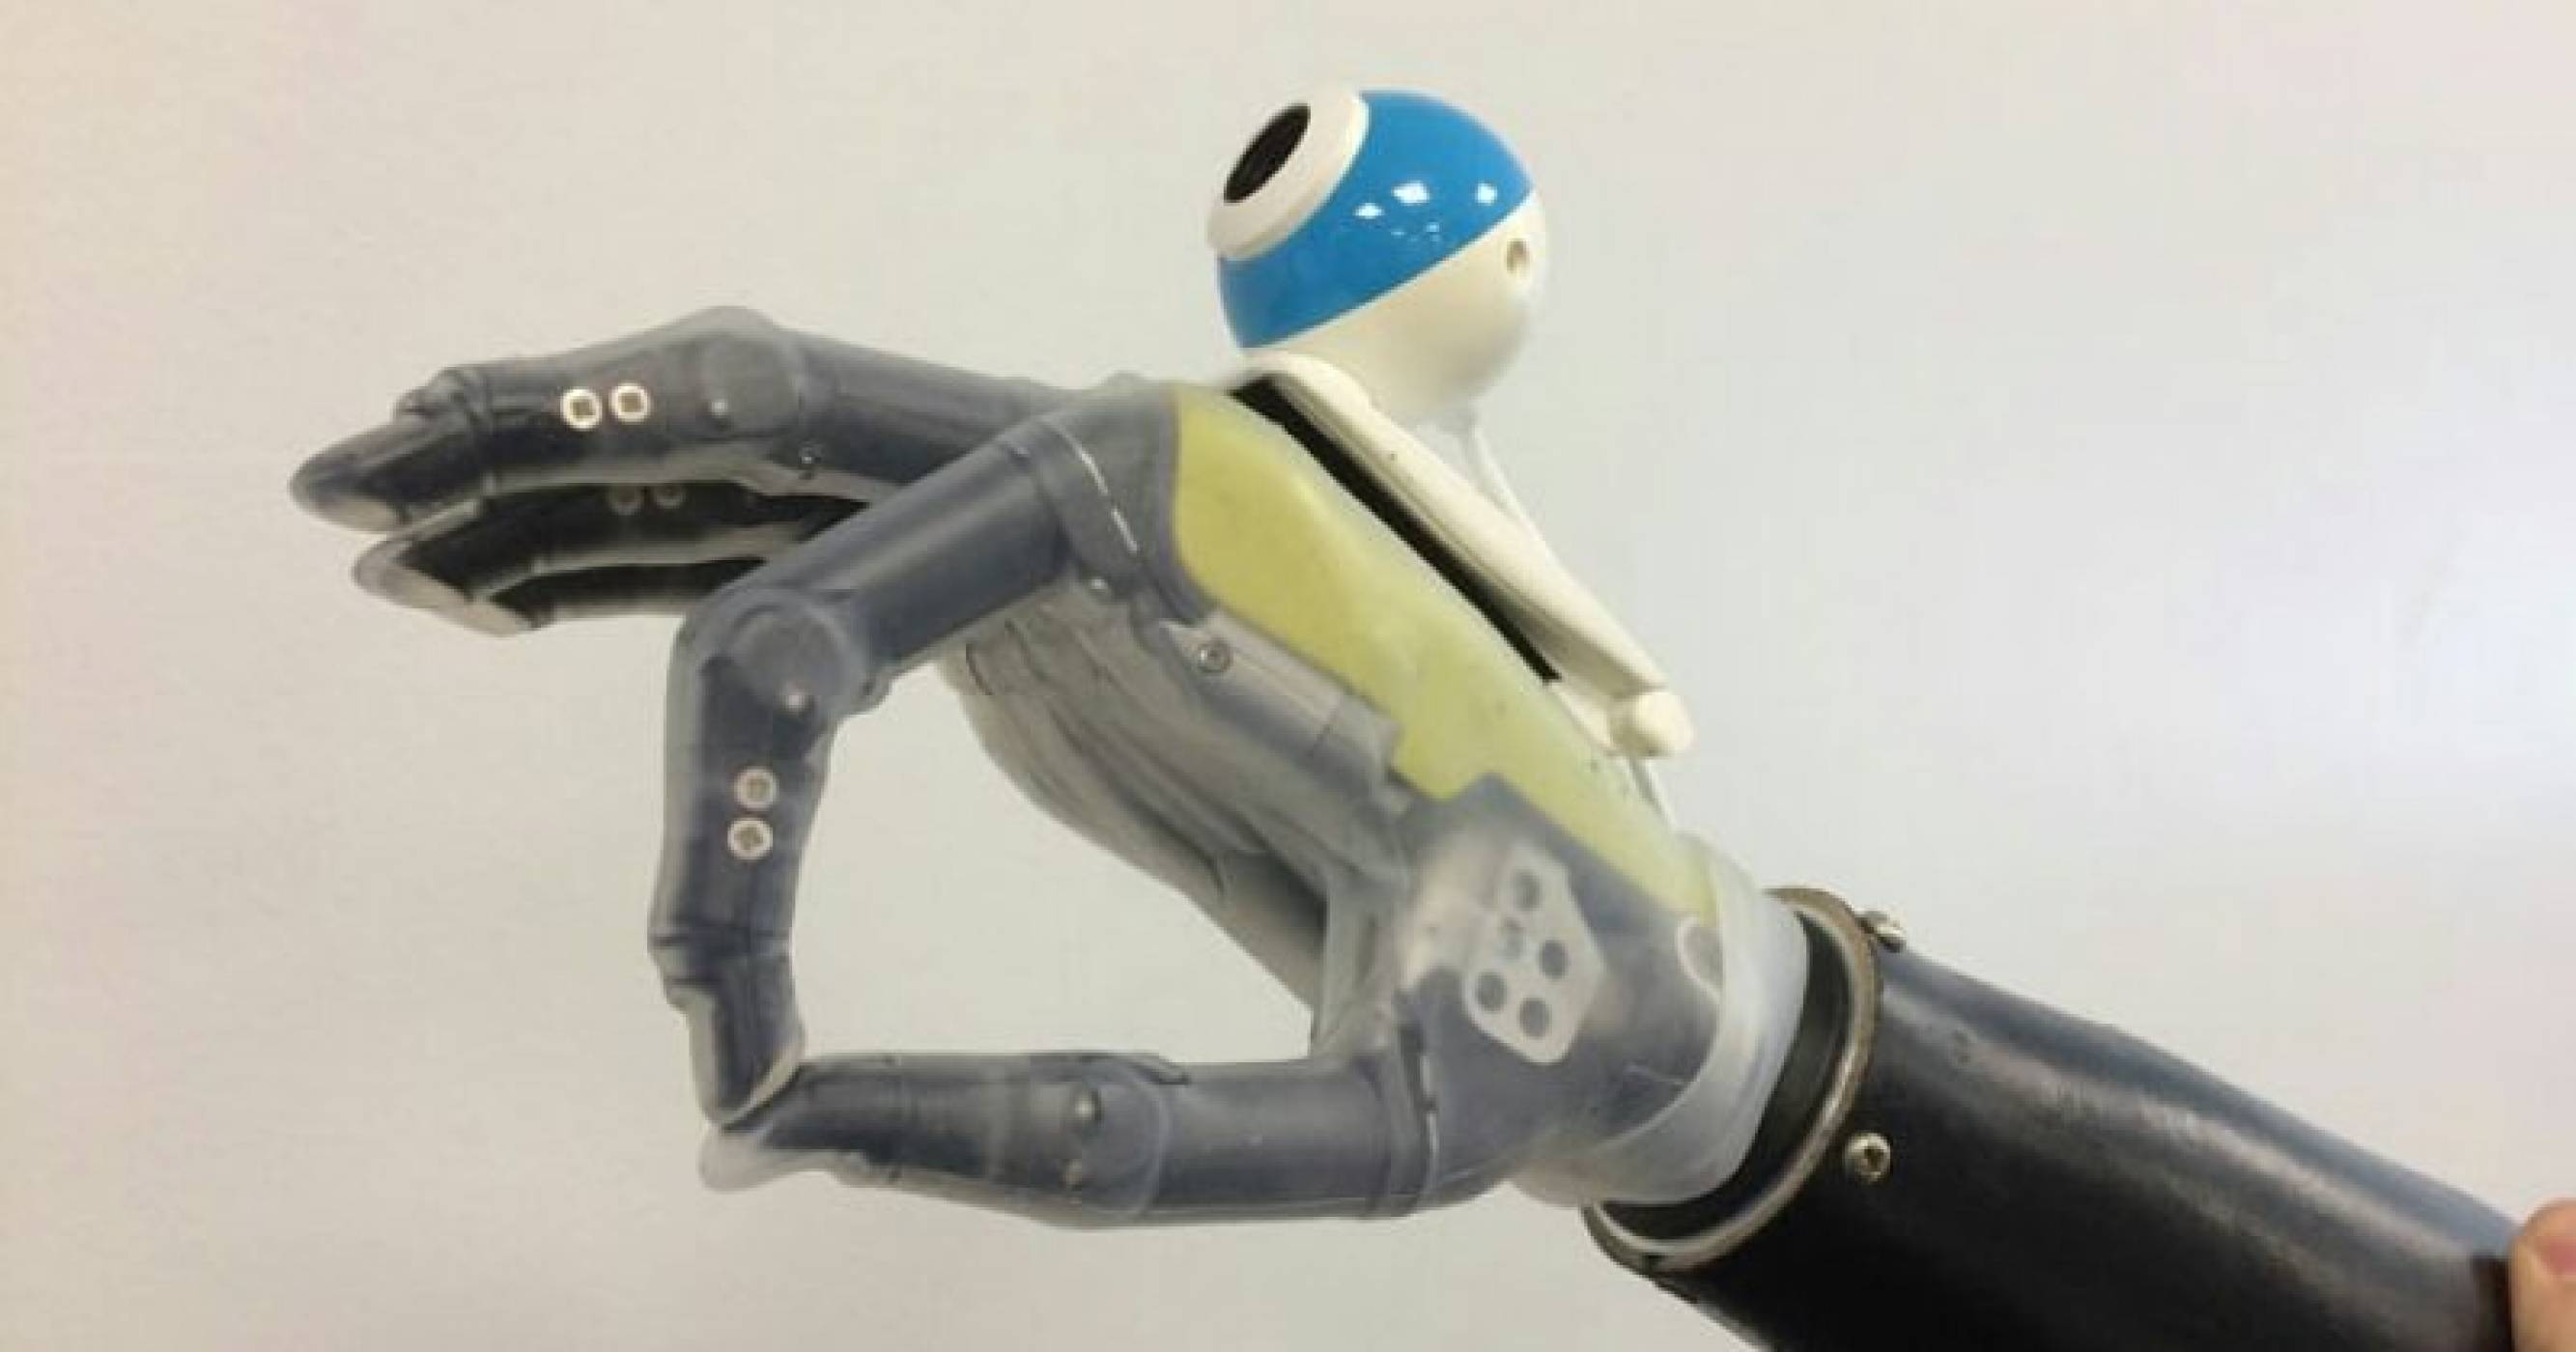 Бионична ръка усеща и улавя предмети около нея